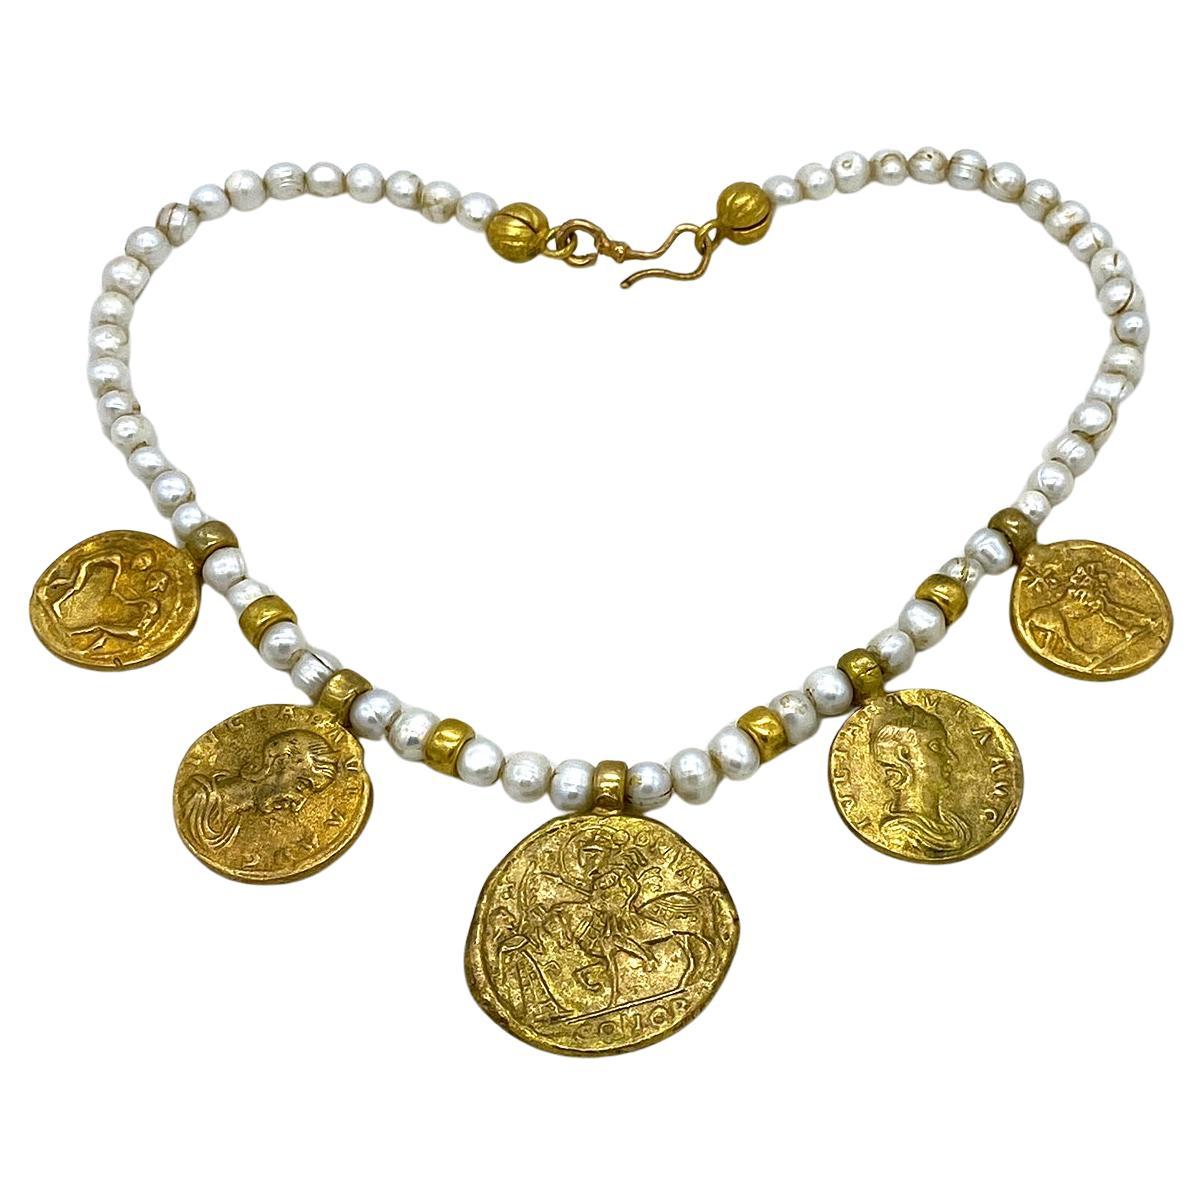 Dies ist eine Süßwasserperlenkette mit römischen Münzen als Charme. Sie ist mit 8 mm großen Barockperlen und vergoldeten Bronzeelementen bestückt. Es gibt fünf von drei verschiedenen Nennwerten vergoldeter Reproduktionen antiker Münzen als Charms.